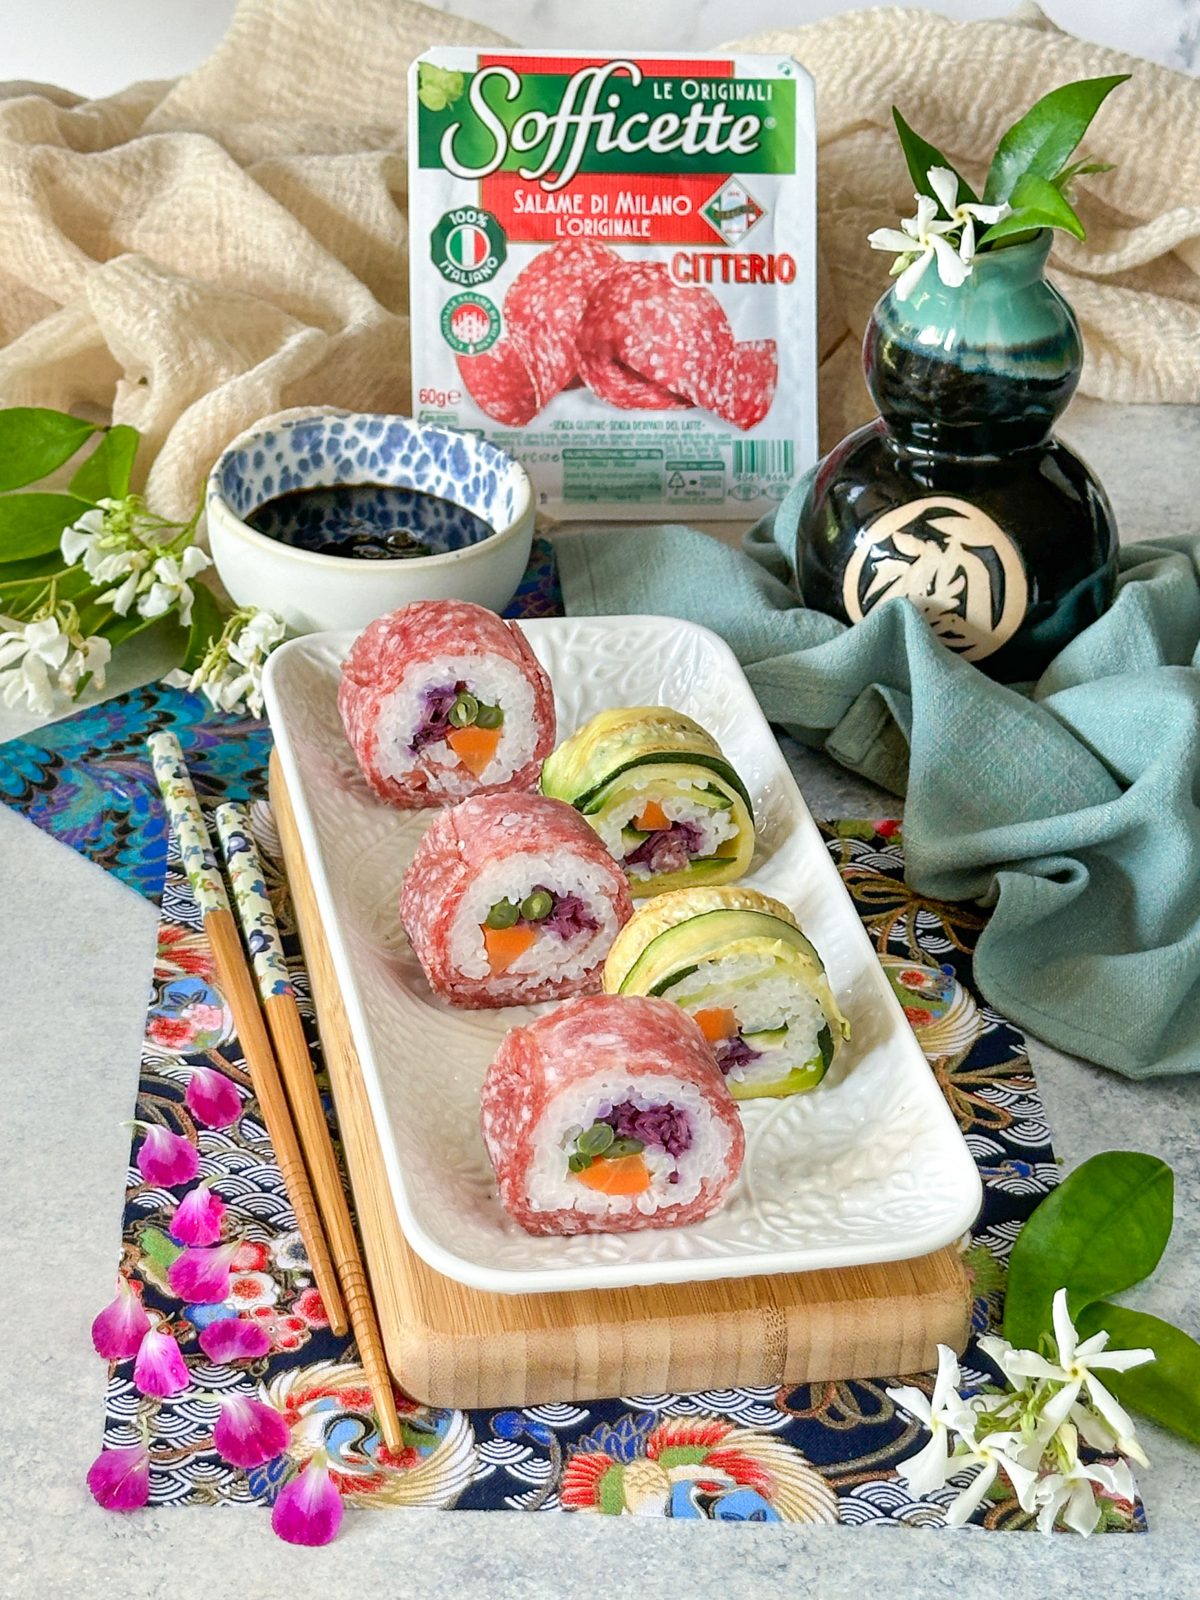 Sushi di salame, Futomaki con Sofficette Salame Milano_2_con pack